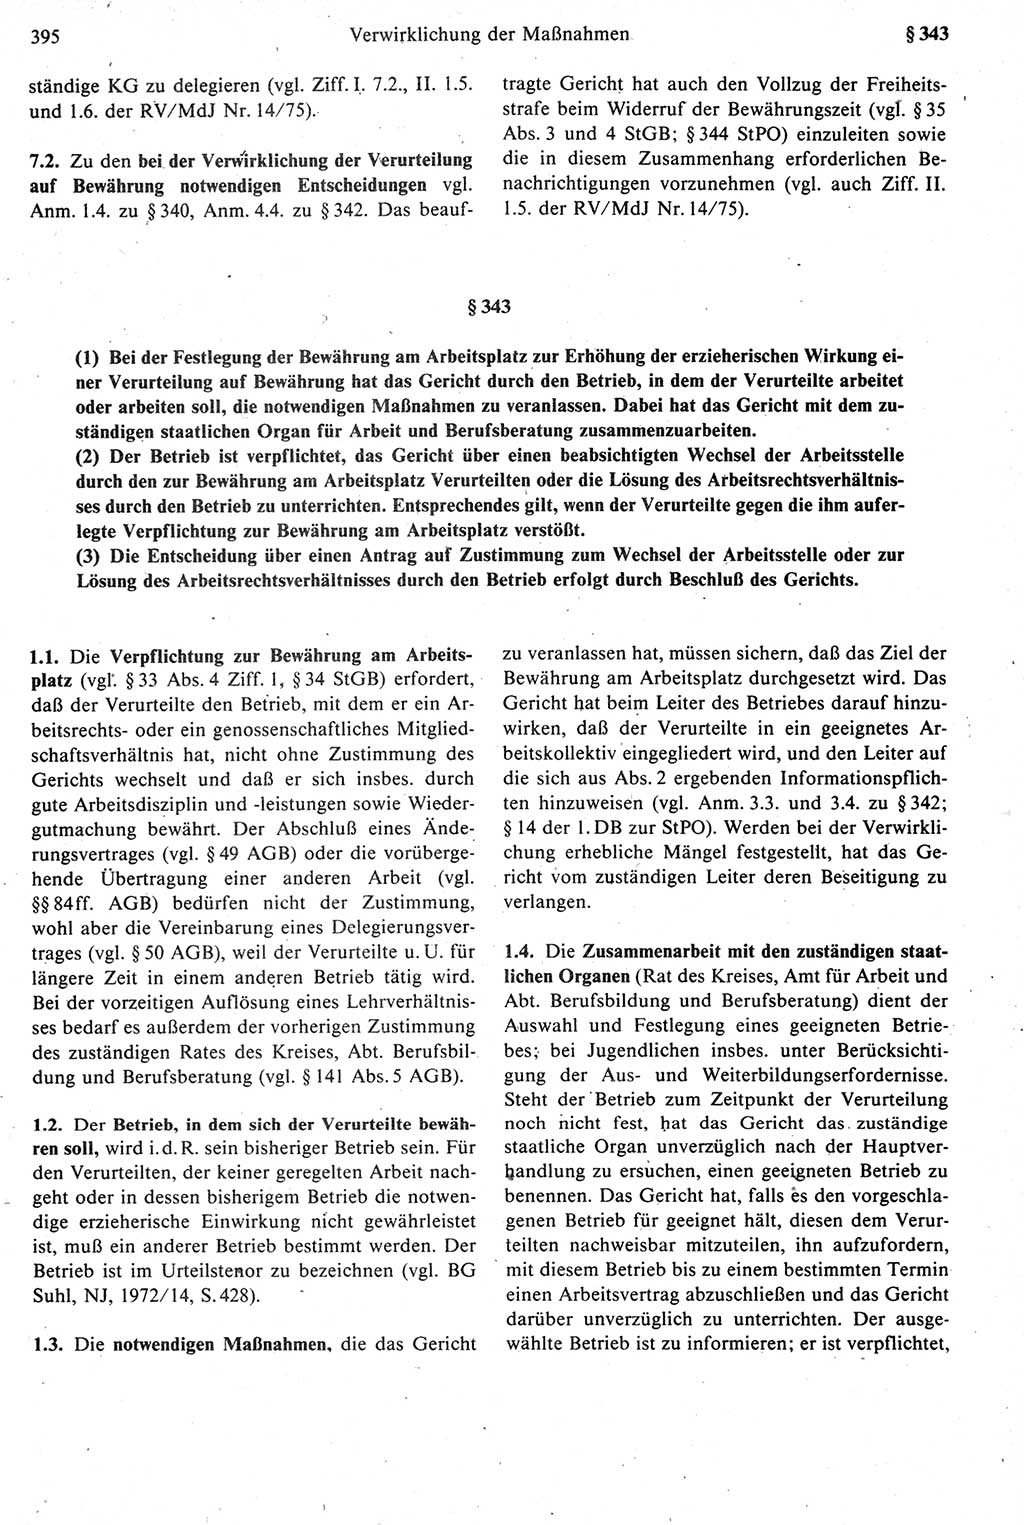 Strafprozeßrecht der DDR [Deutsche Demokratische Republik], Kommentar zur Strafprozeßordnung (StPO) 1987, Seite 395 (Strafprozeßr. DDR Komm. StPO 1987, S. 395)